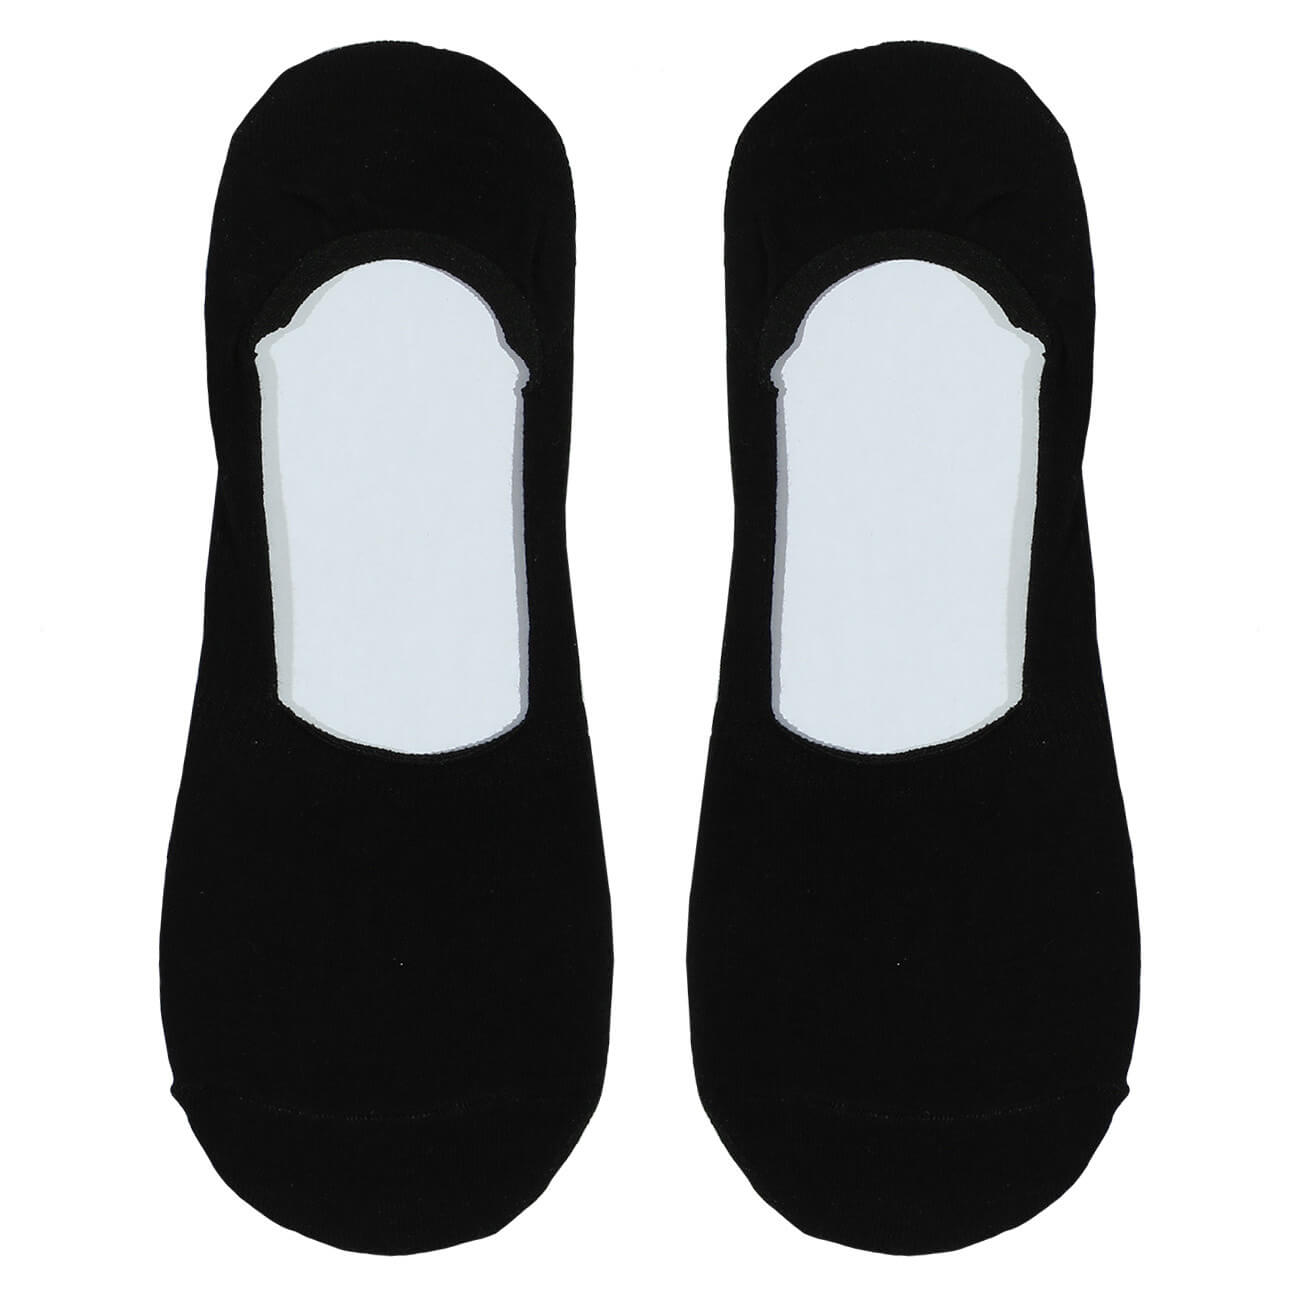 Носки-следки женские, р. 36-38, хлопок/полиэстер, черные, Basic носки мужские р 43 46 хлопок полиэстер черные basic